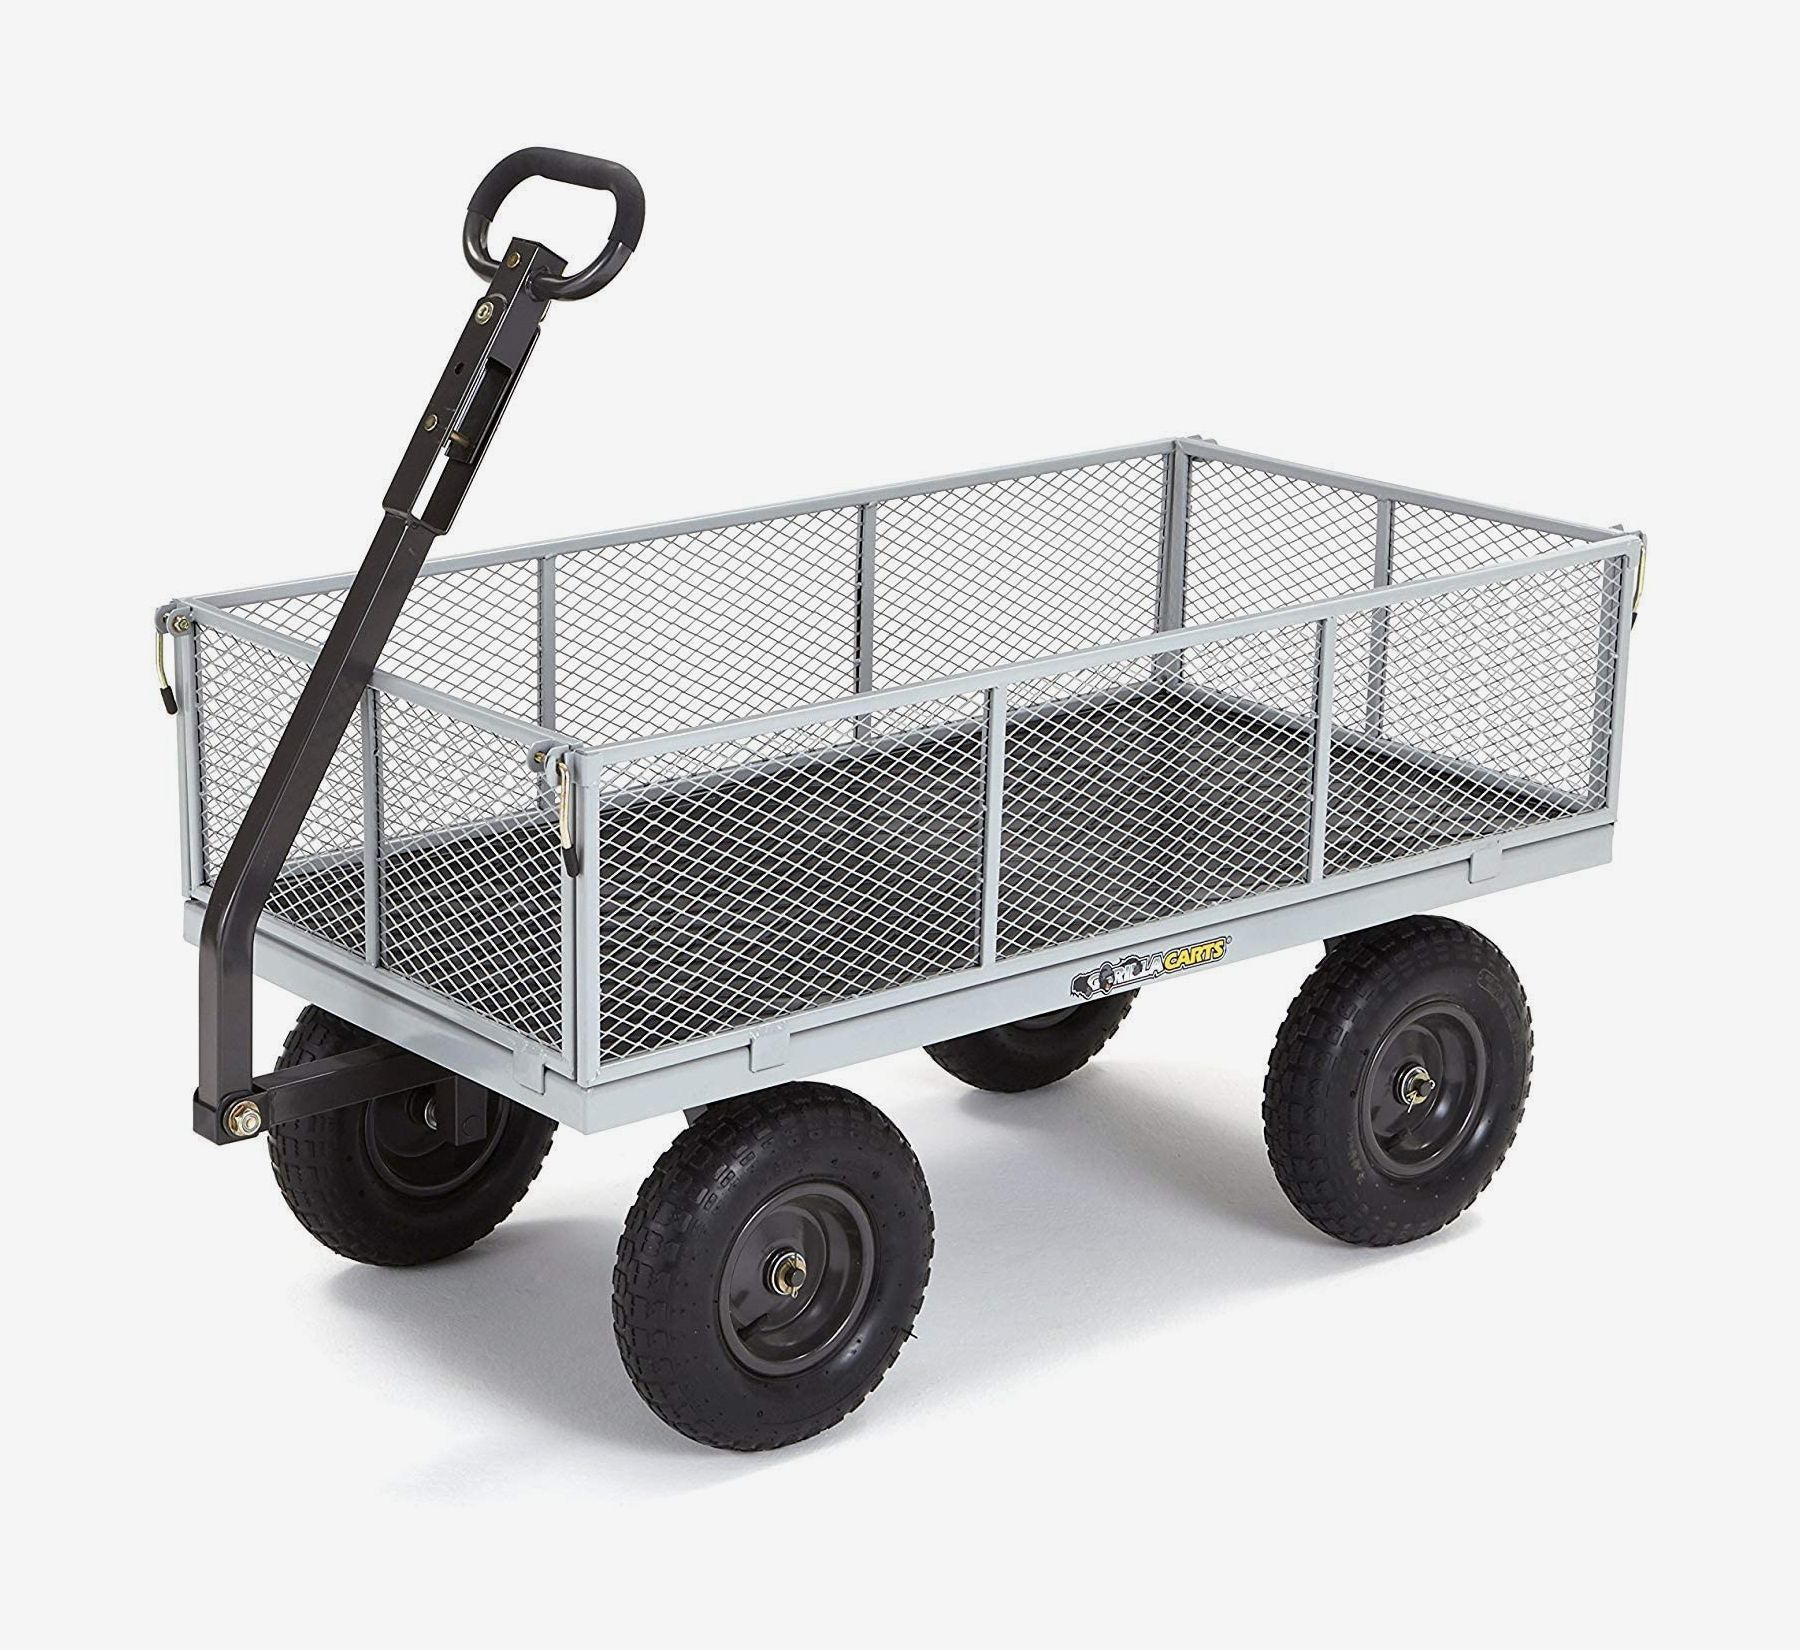 1400 com. Тележка Gorilla Carts. Тележка грузовая Nord Garden Cart. Тележка со съемными бортами. Тележка сетчатая для перевозки.